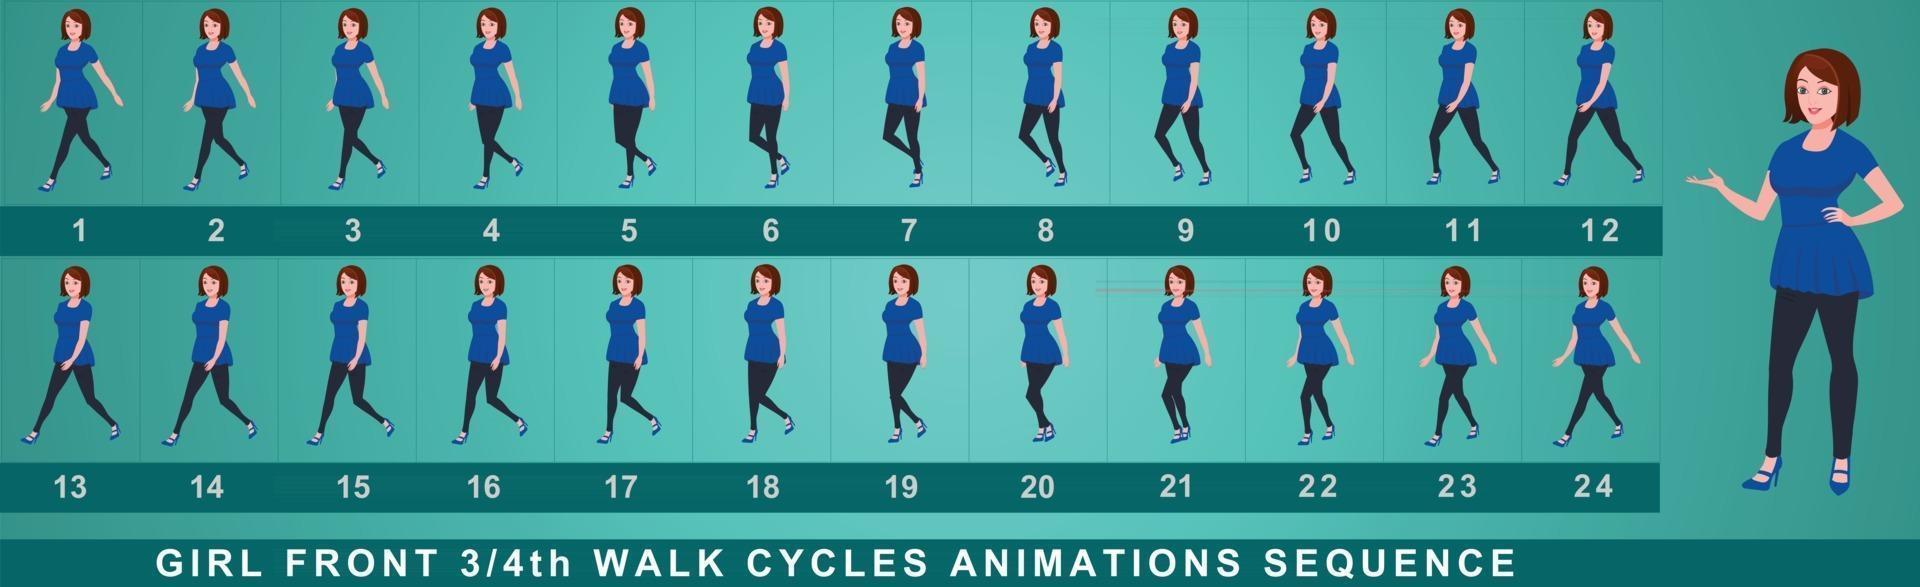 séquence d'animation de cycle de marche de personnage de fille vecteur